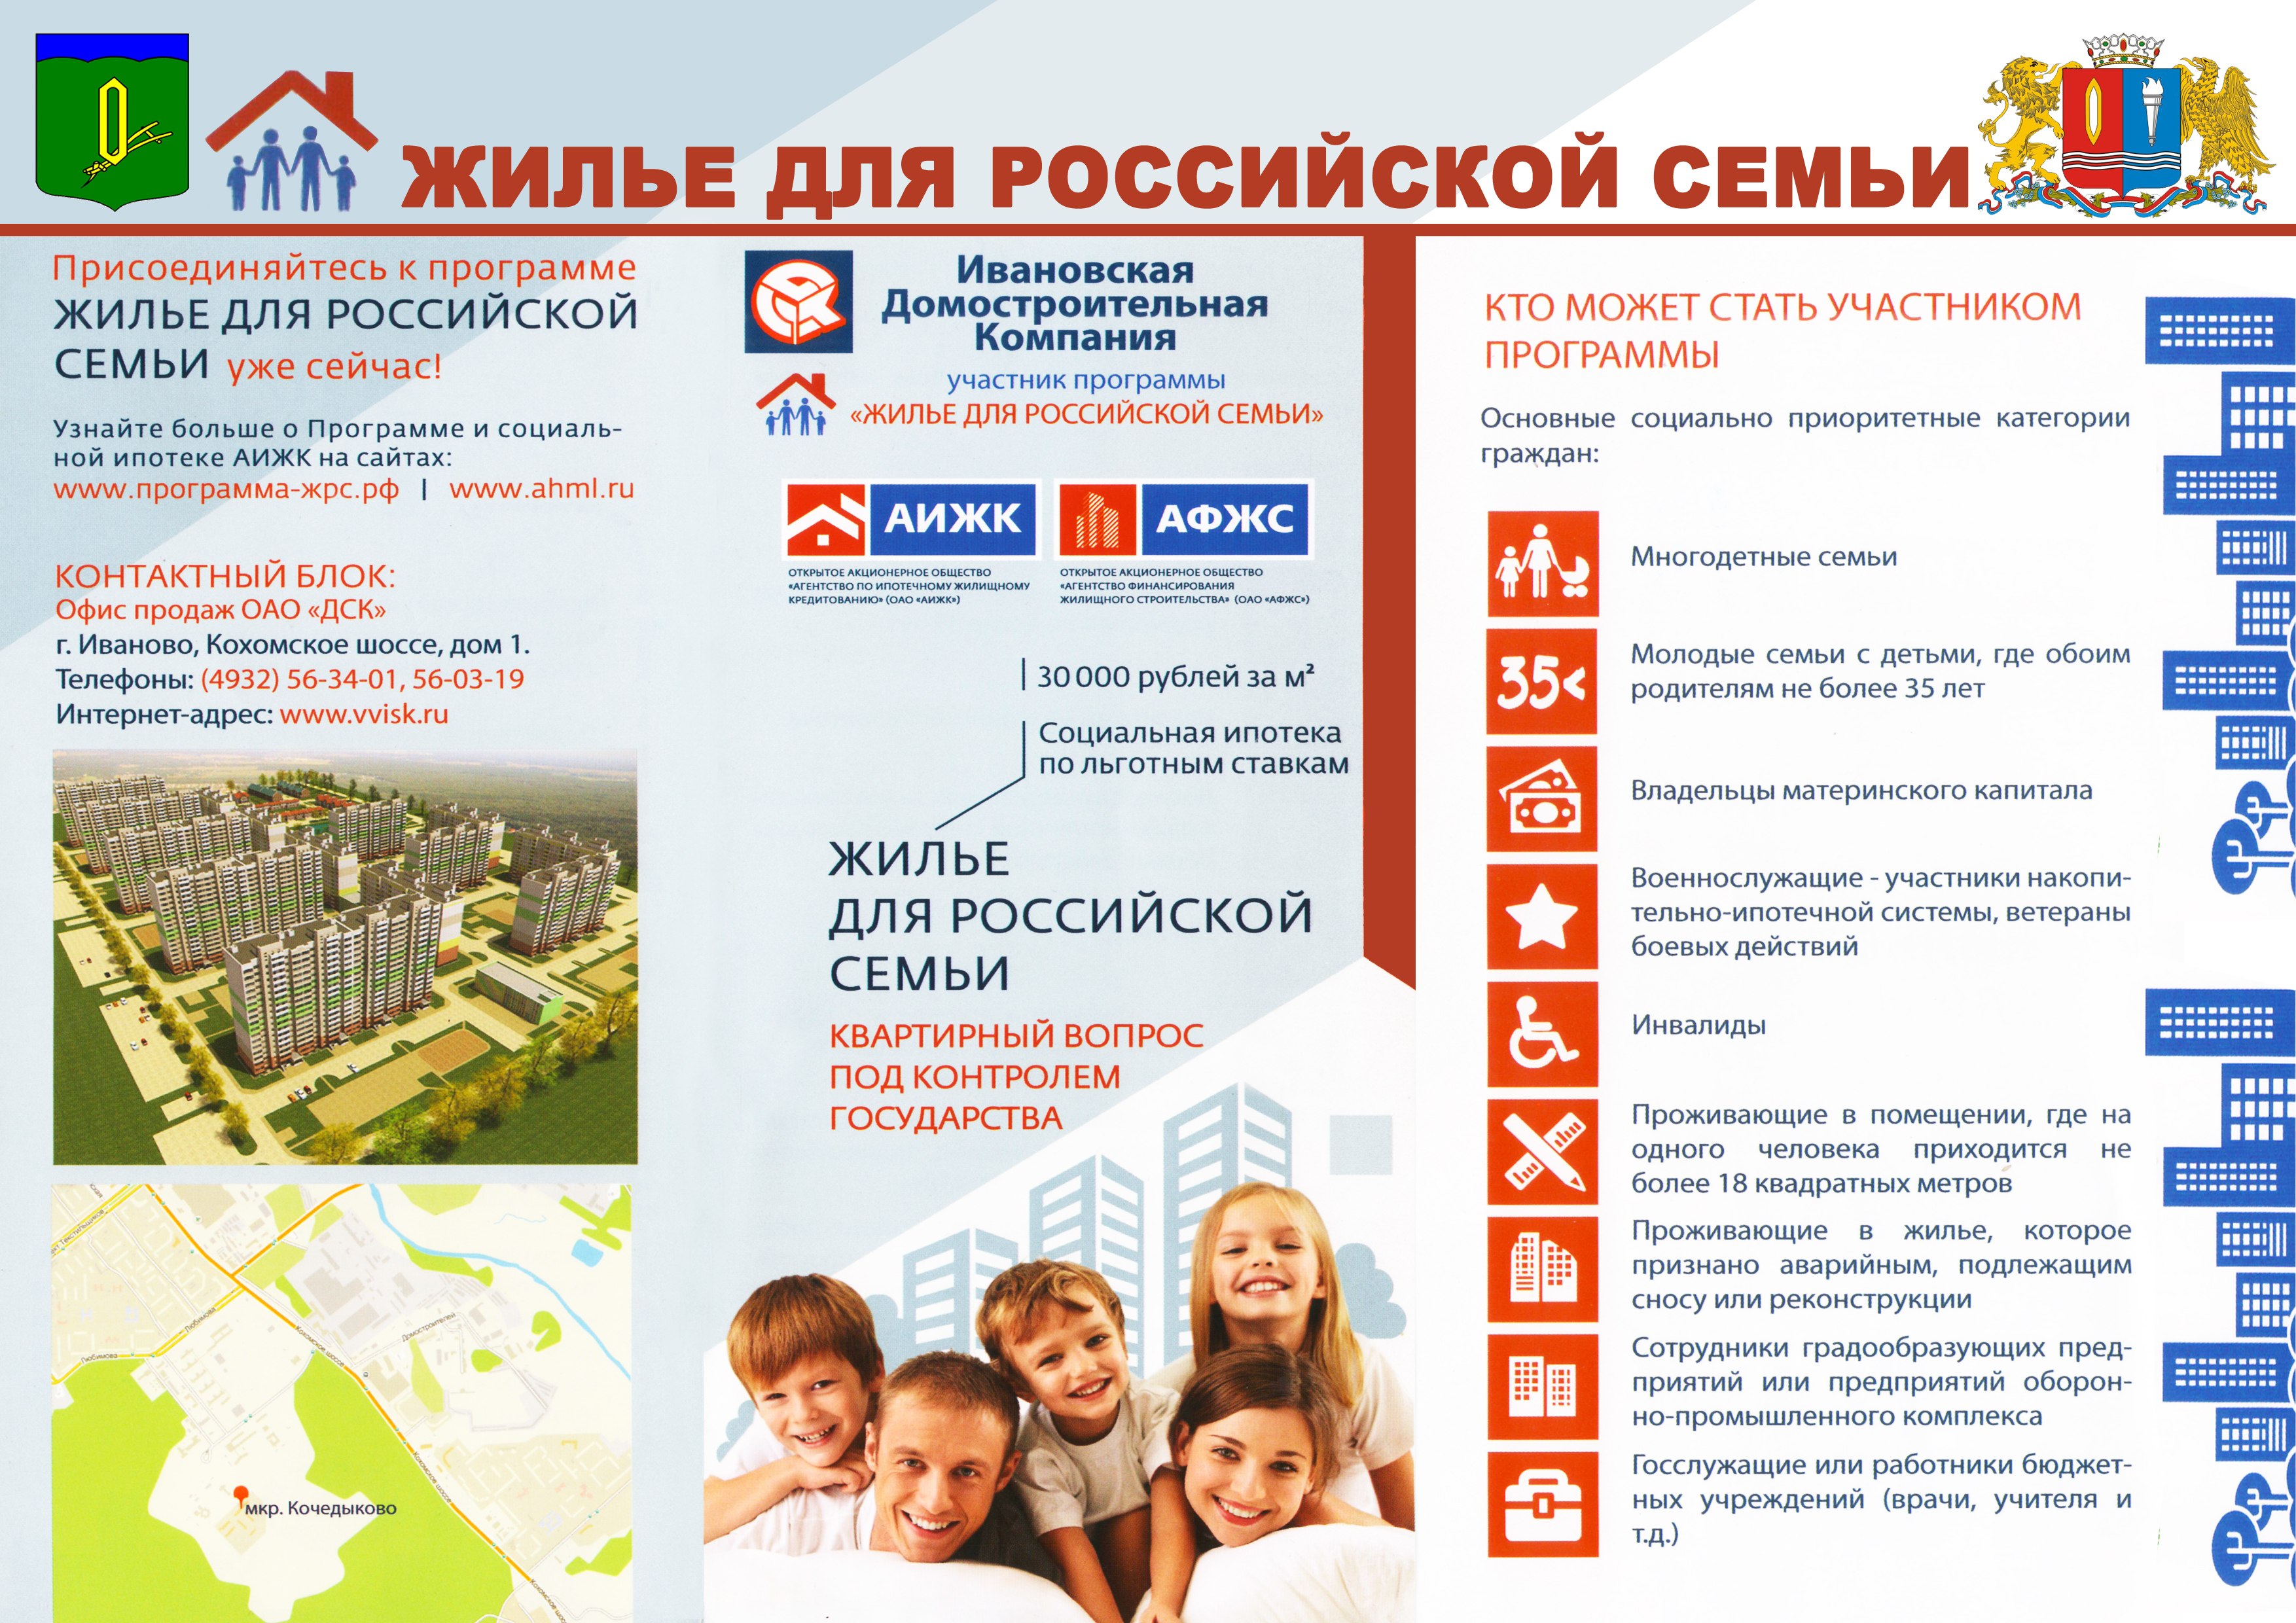 Программа Жилье для российской семьи 2020